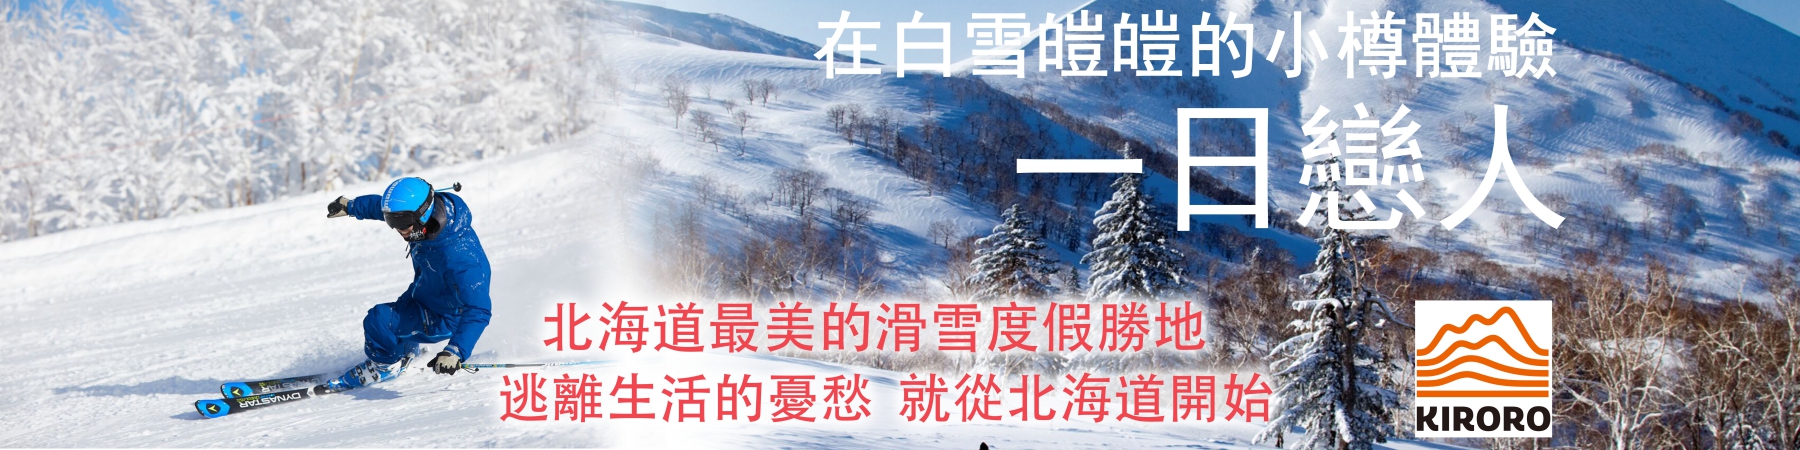 贈獎《一日戀人 - 北海道Kiroro滑雪券》抽獎活動